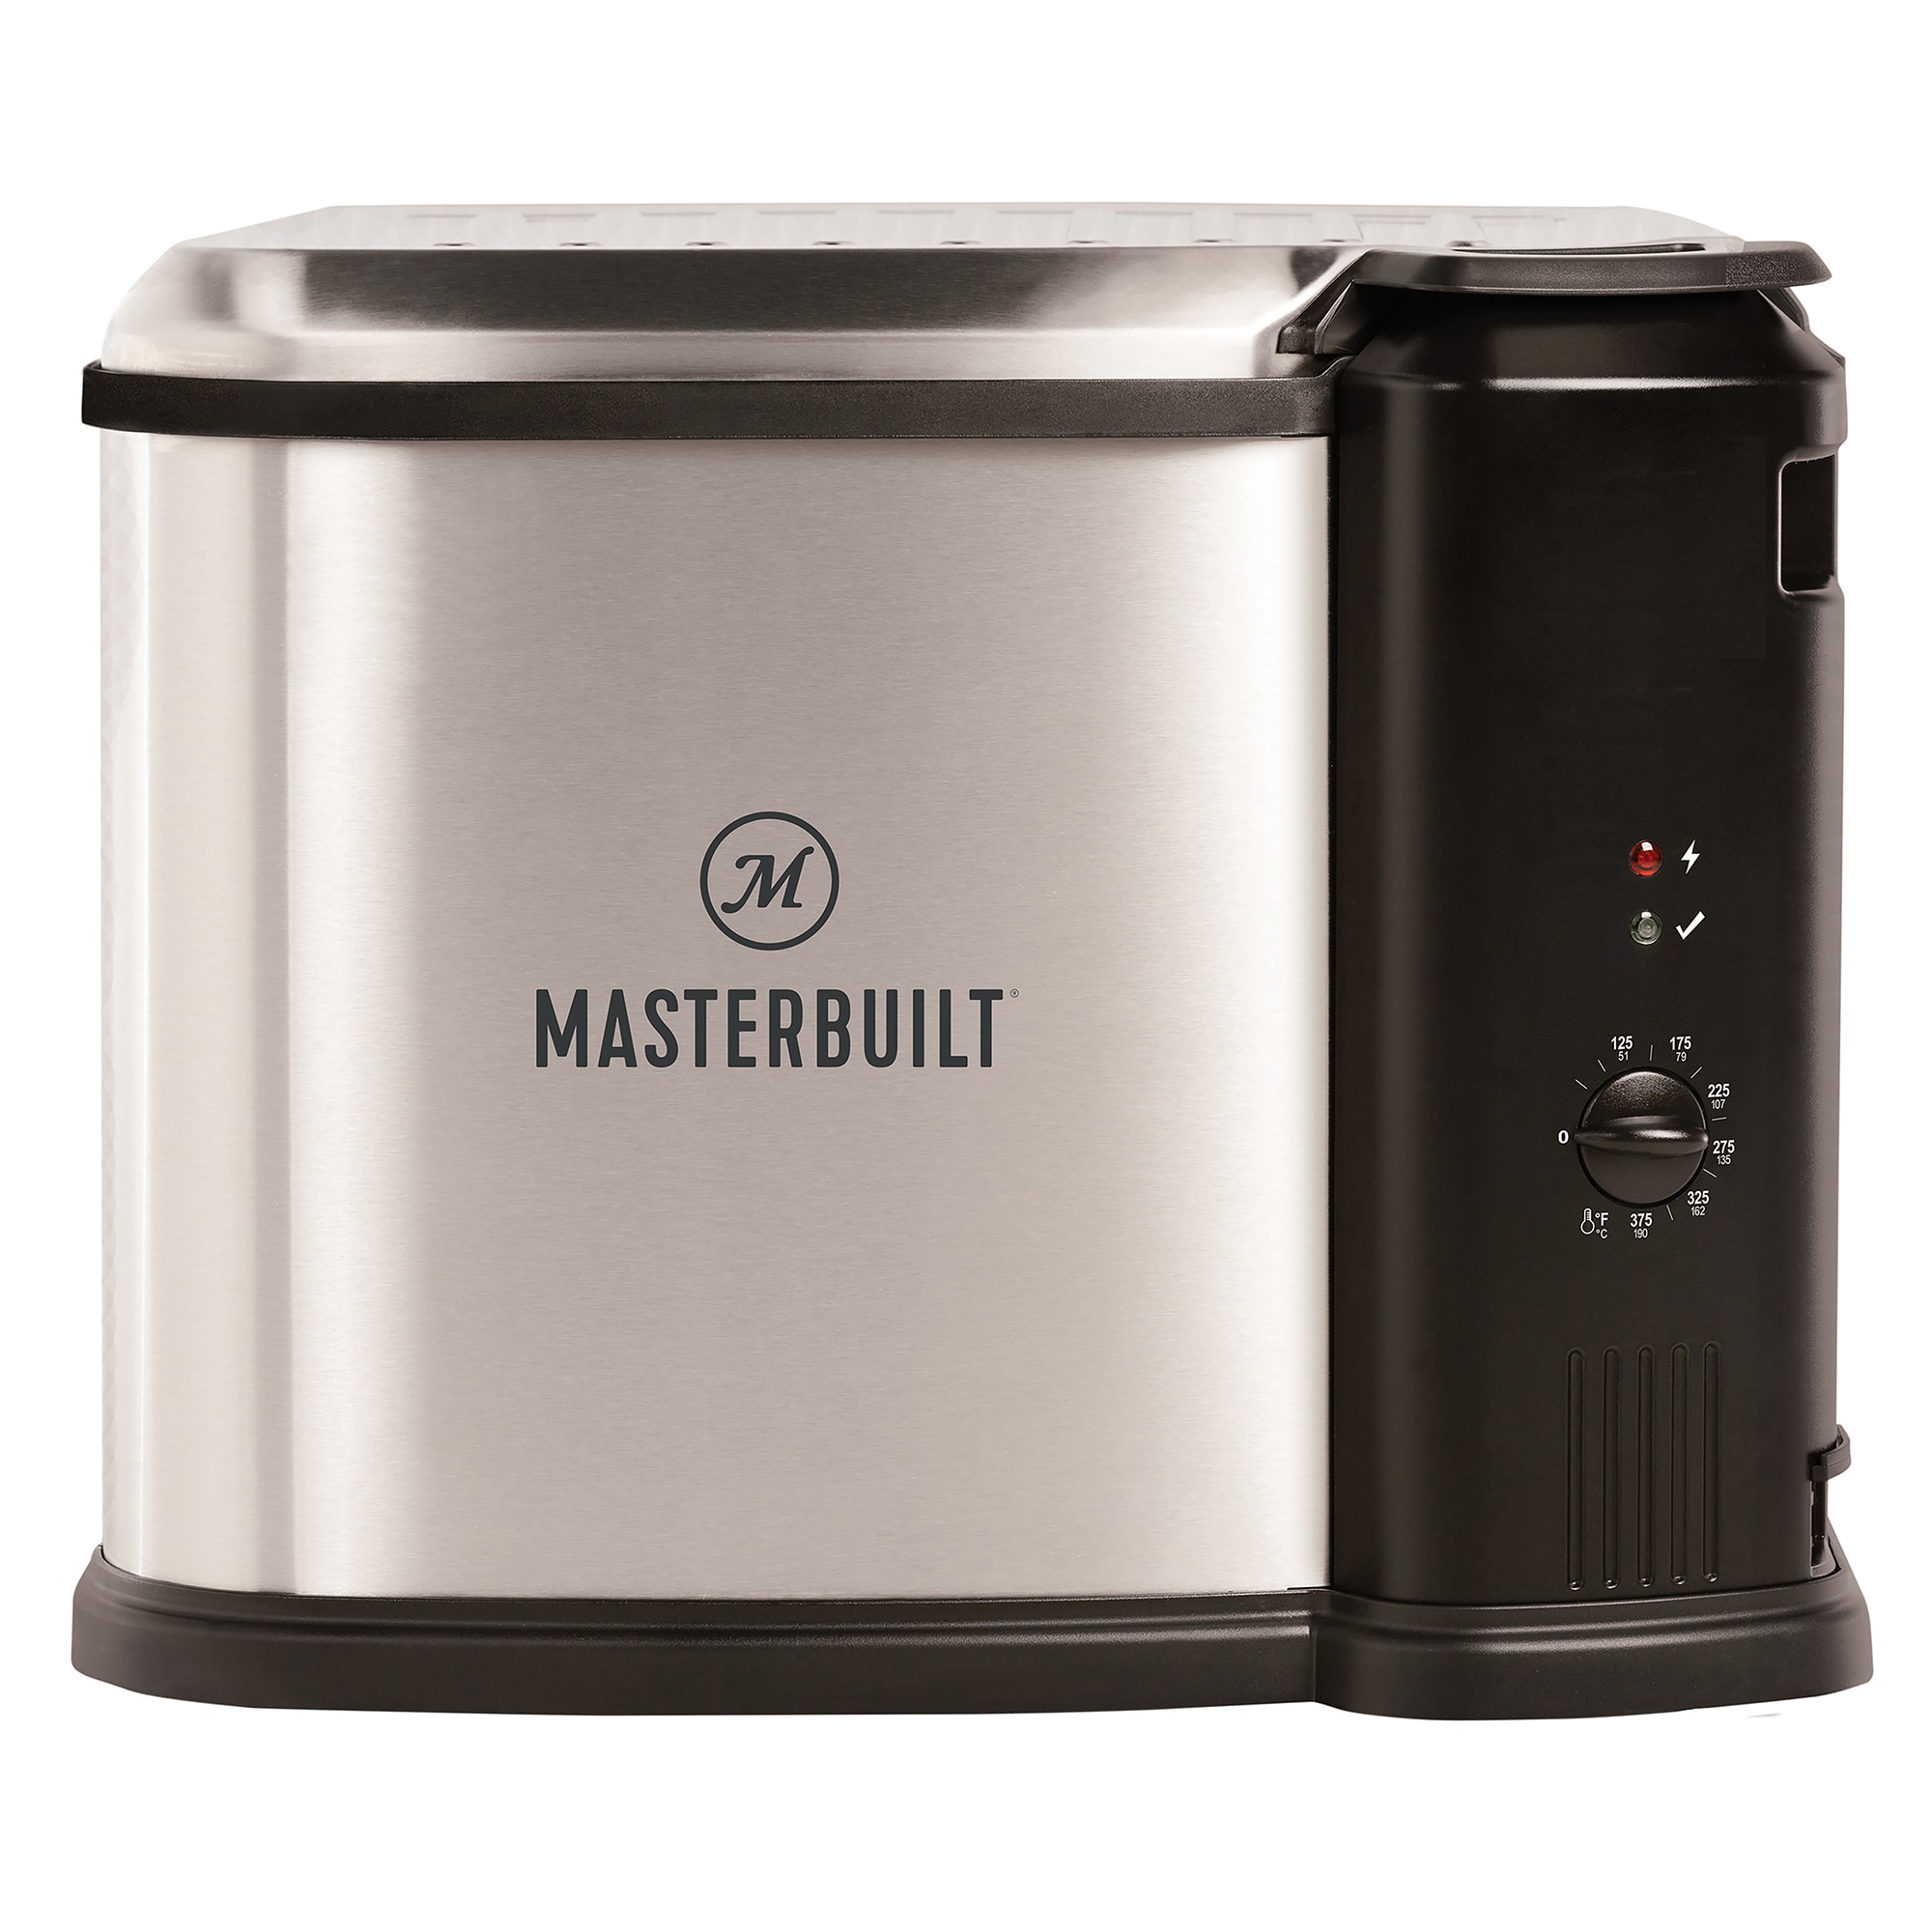 Masterbuilt 10L XL Electric Fryer, Boiler and Steamer Ignition